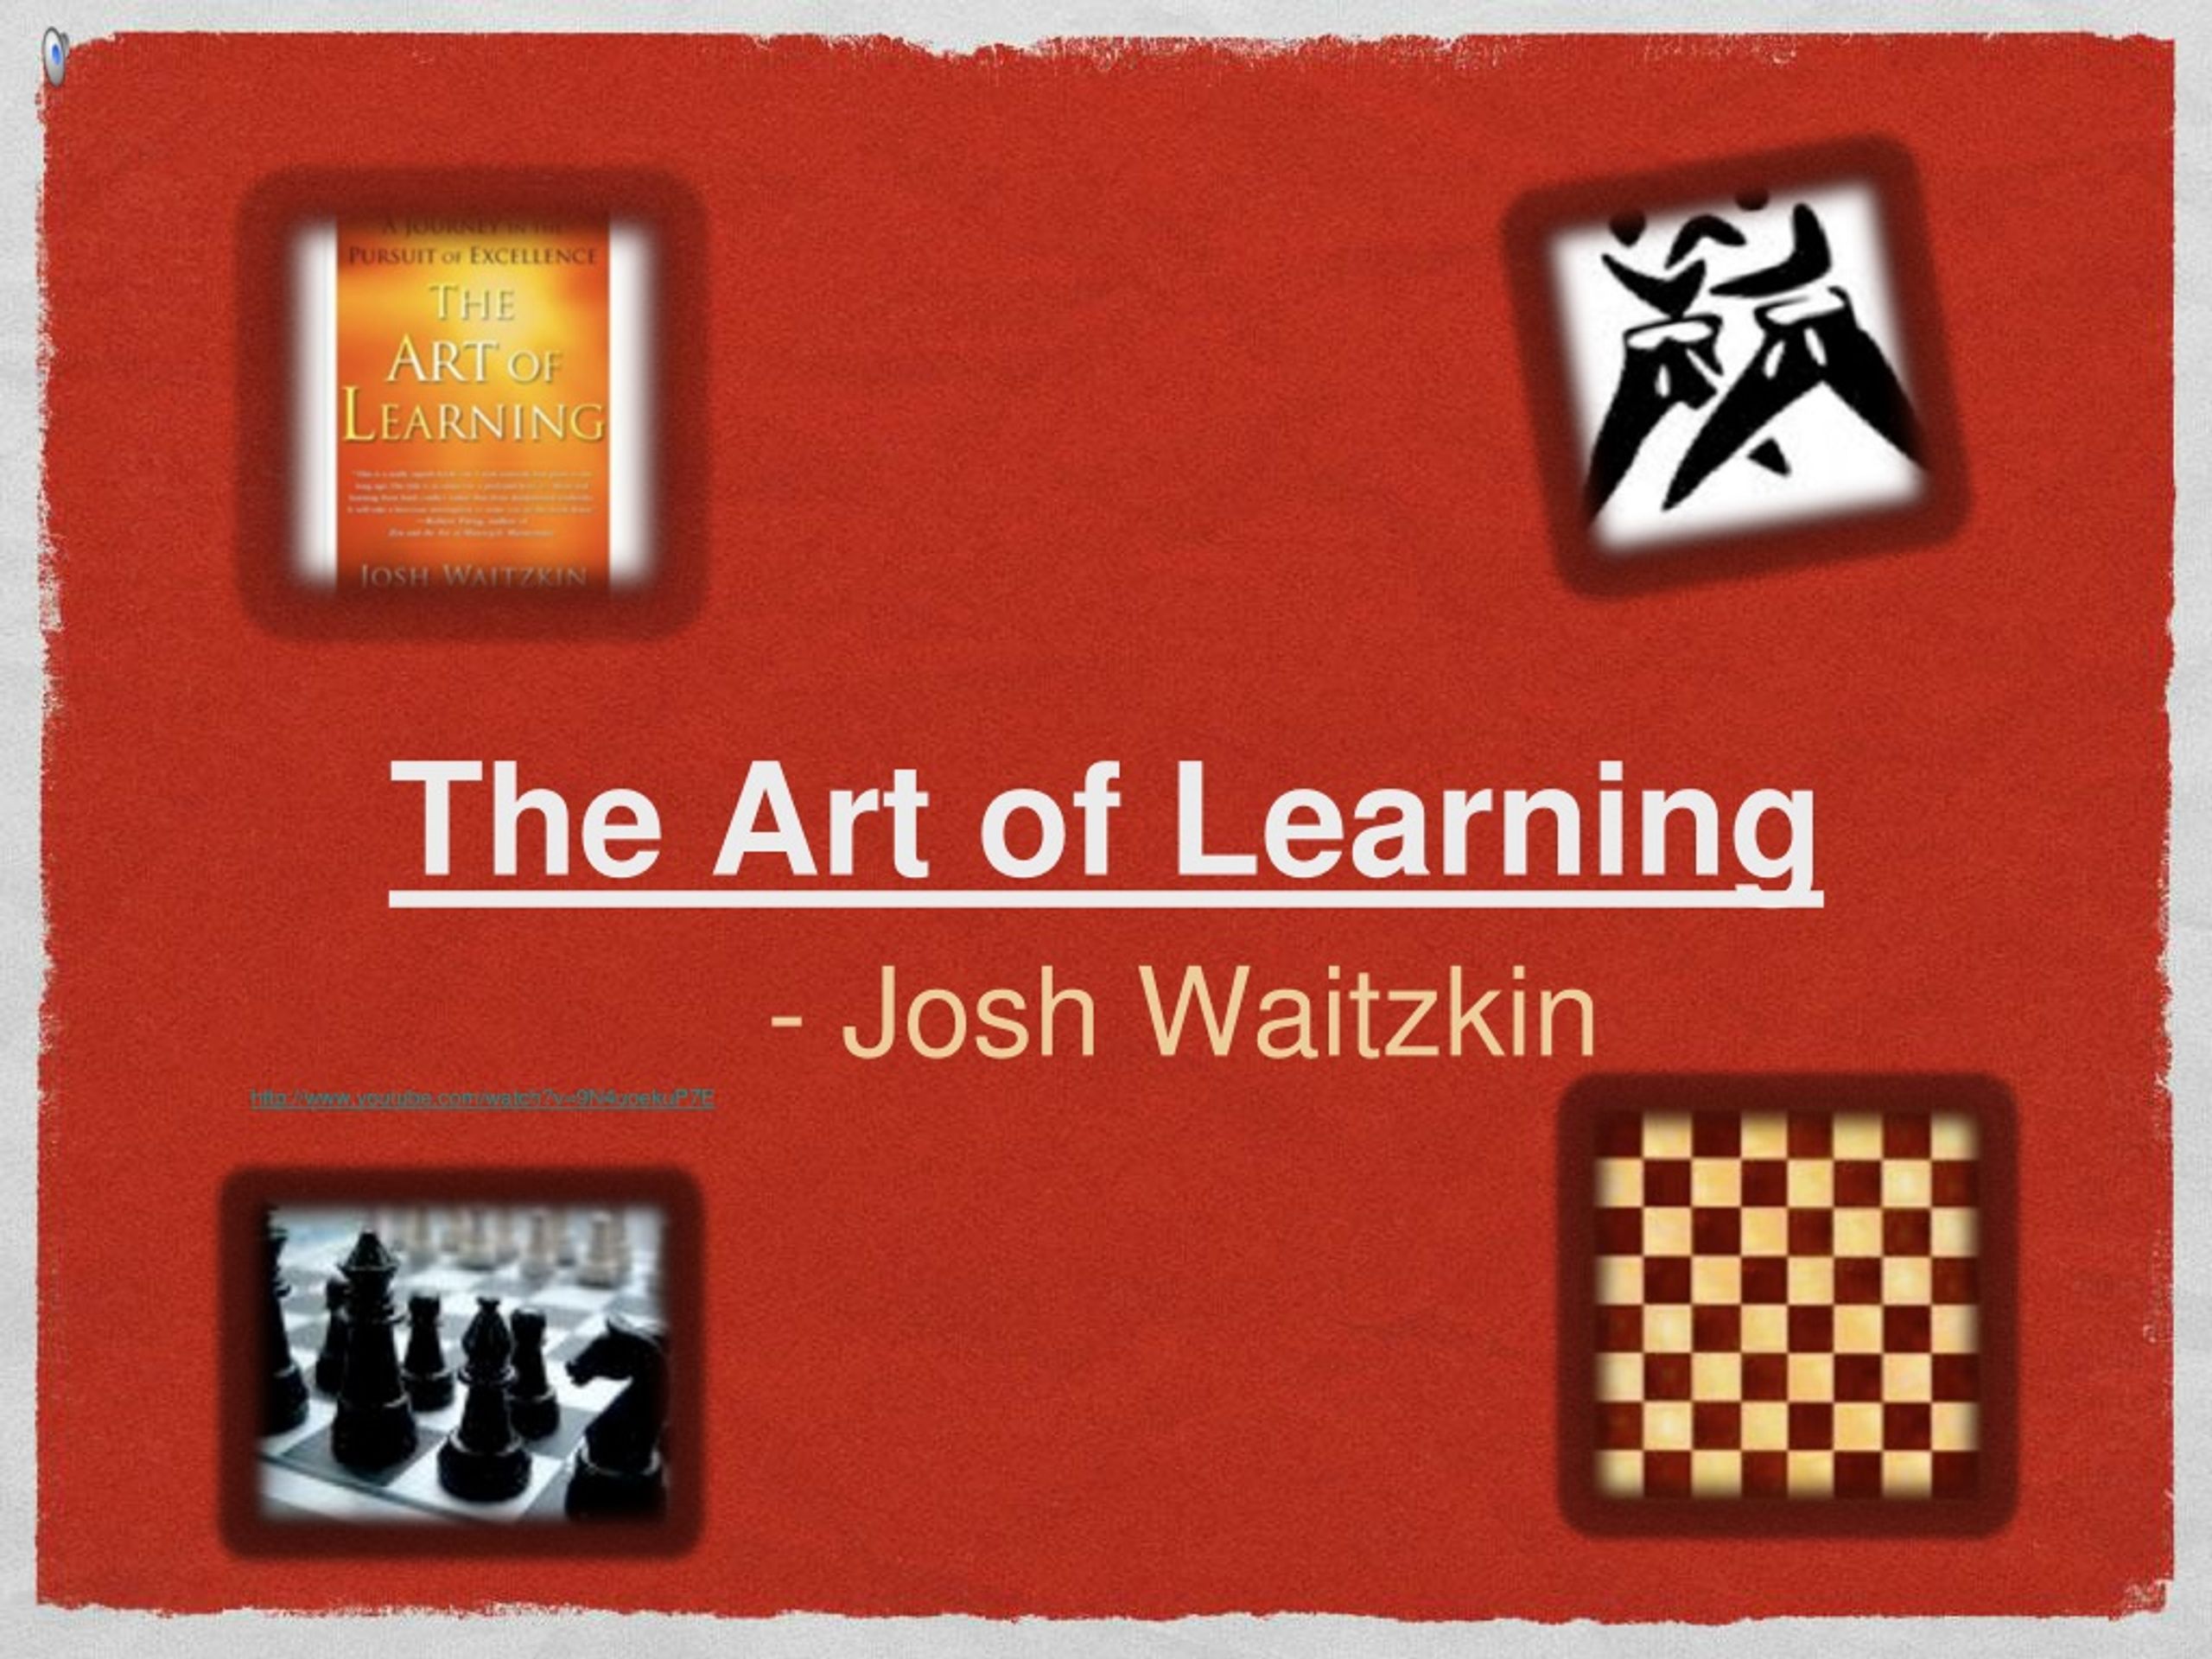 THE ART OF LEARNING by Josh Waitzkin